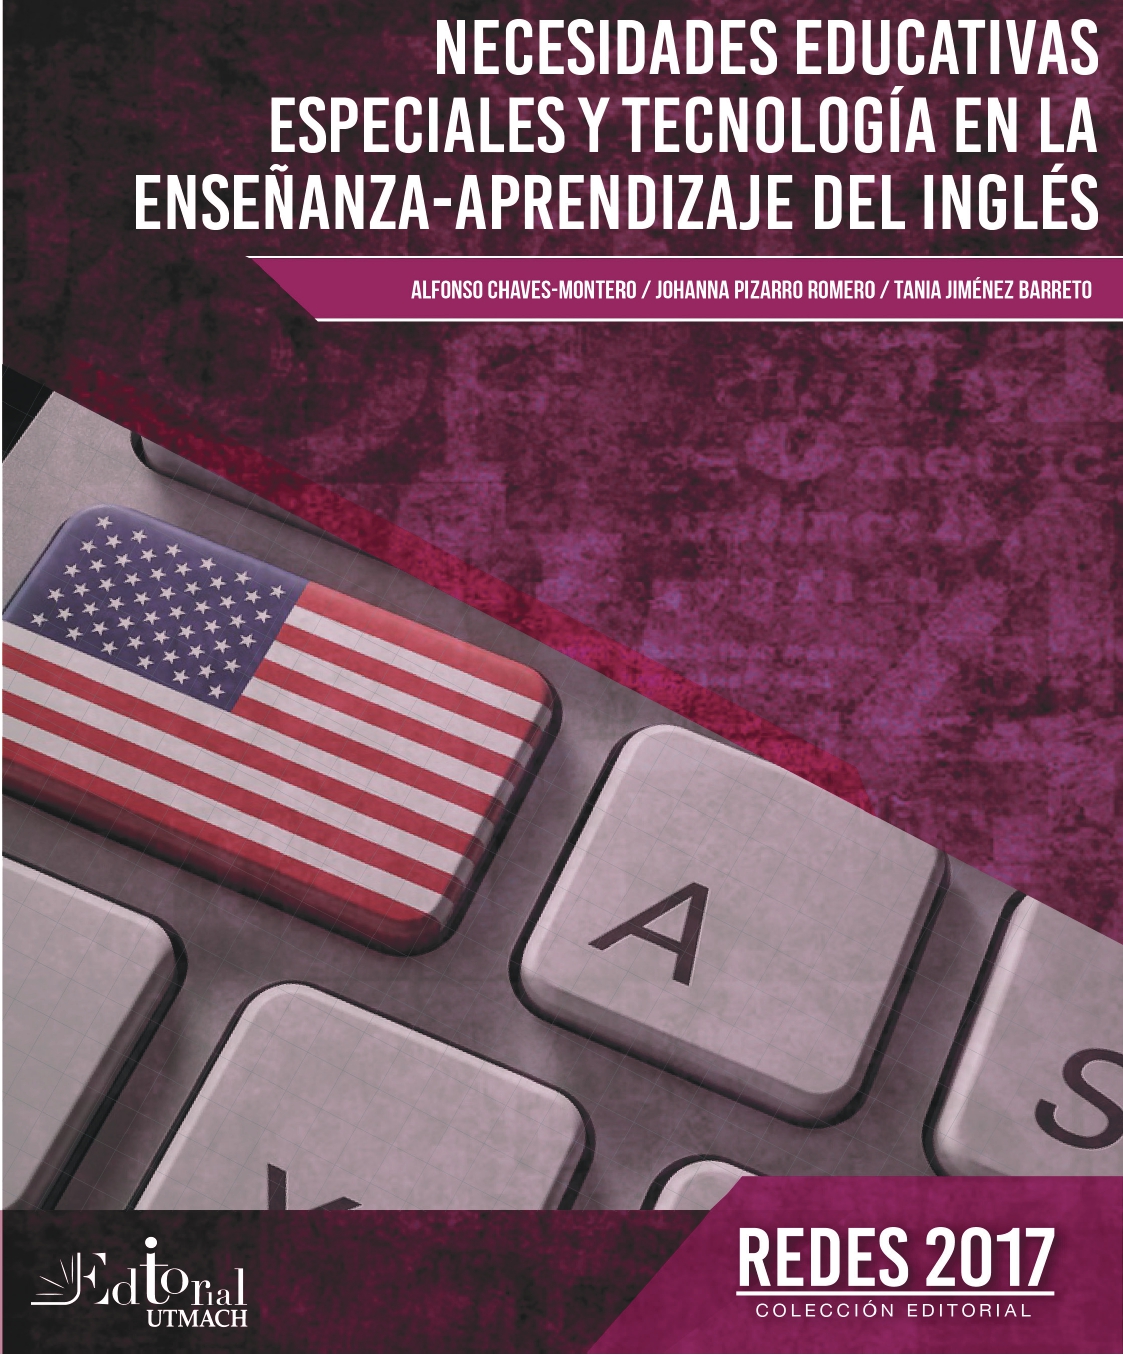 Imagen de portada del libro Necesidades educativas especiales y tecnología en la enseñanza-aprendizaje del inglés